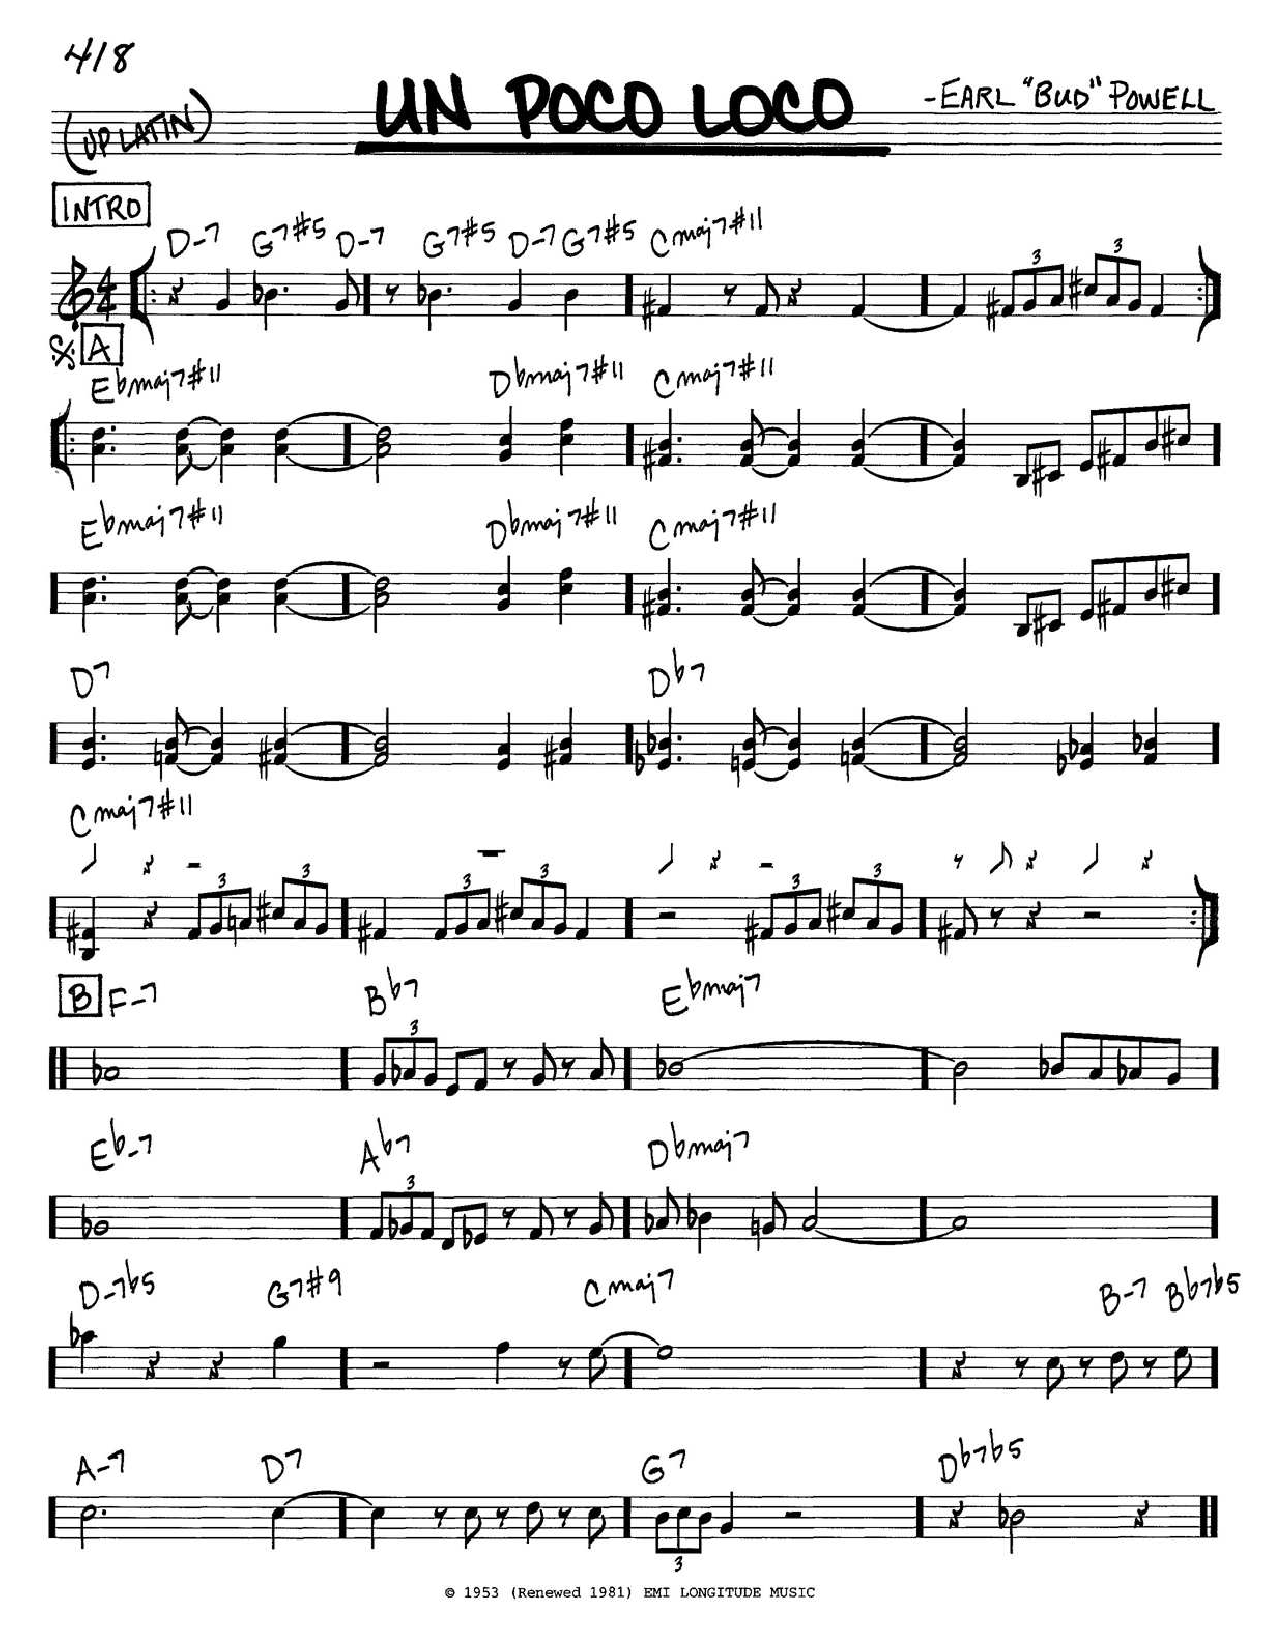 Alegre Contradecir Engreído Bud Powell "Un Poco Loco" Sheet Music PDF Notes, Chords | Jazz Score Piano  Solo Download Printable. SKU: 152657